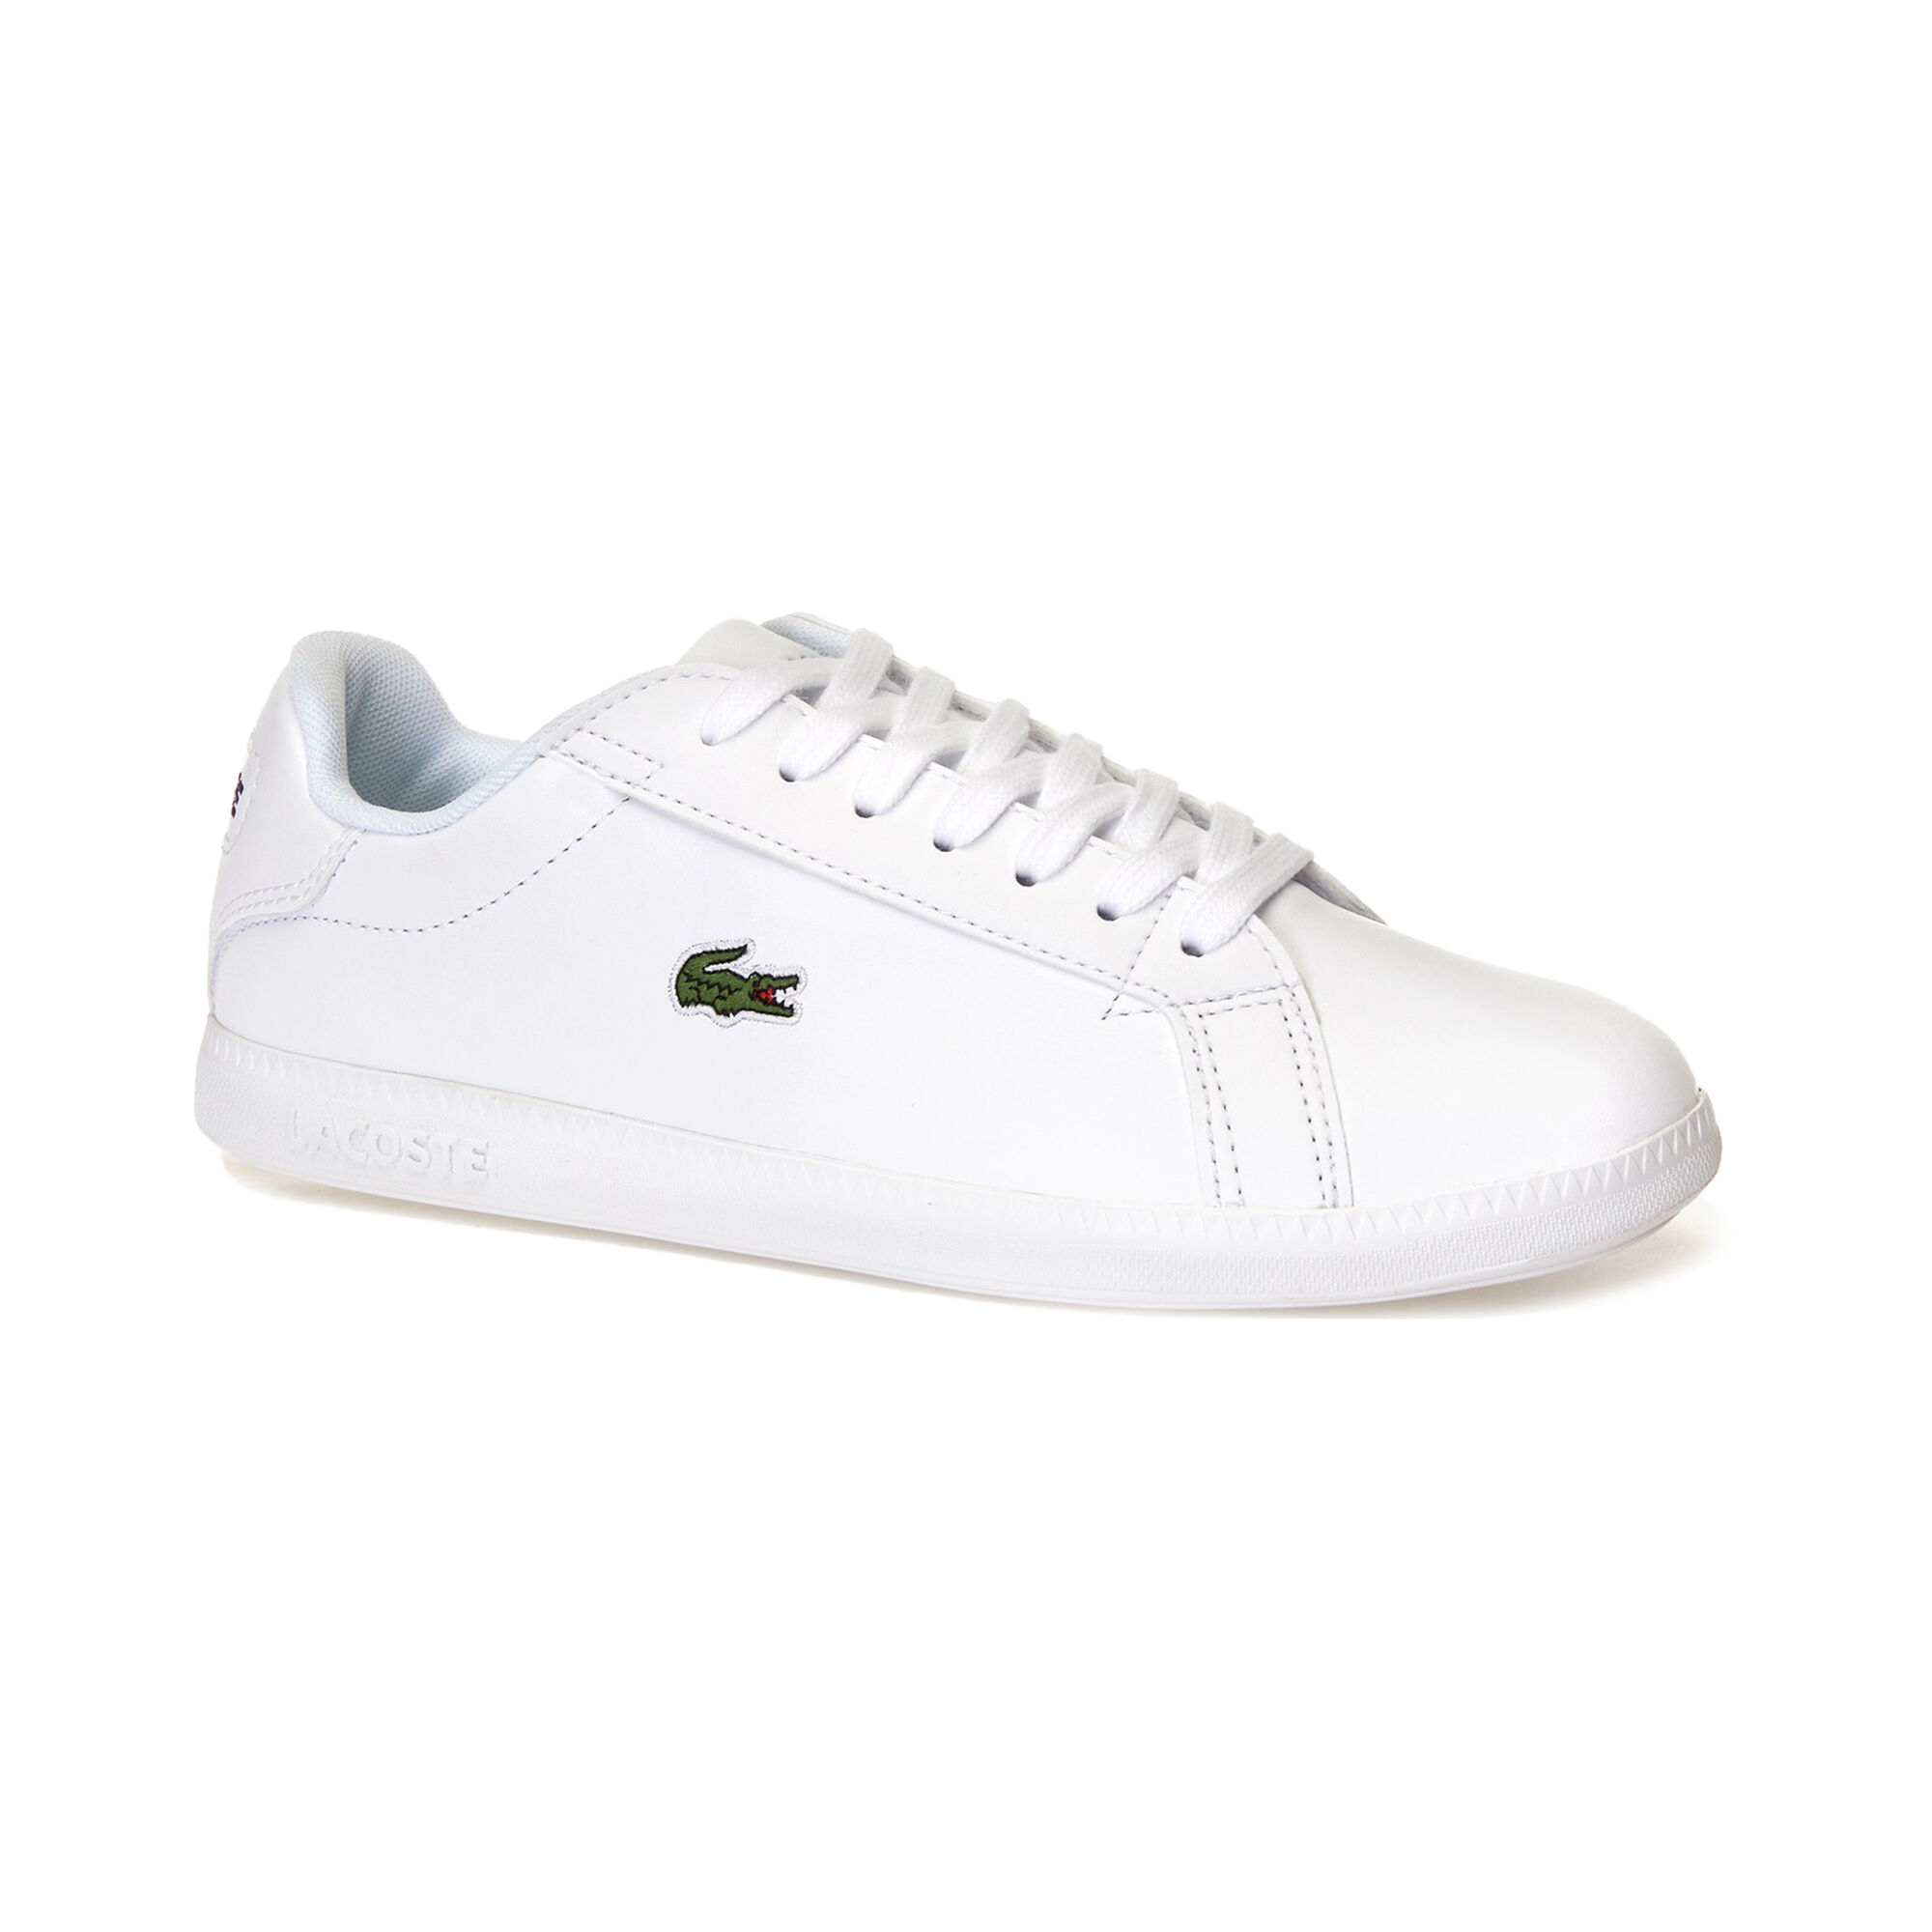 Buy Lacoste Graduate Sneakers Women White, Green online | Tennis Point UK